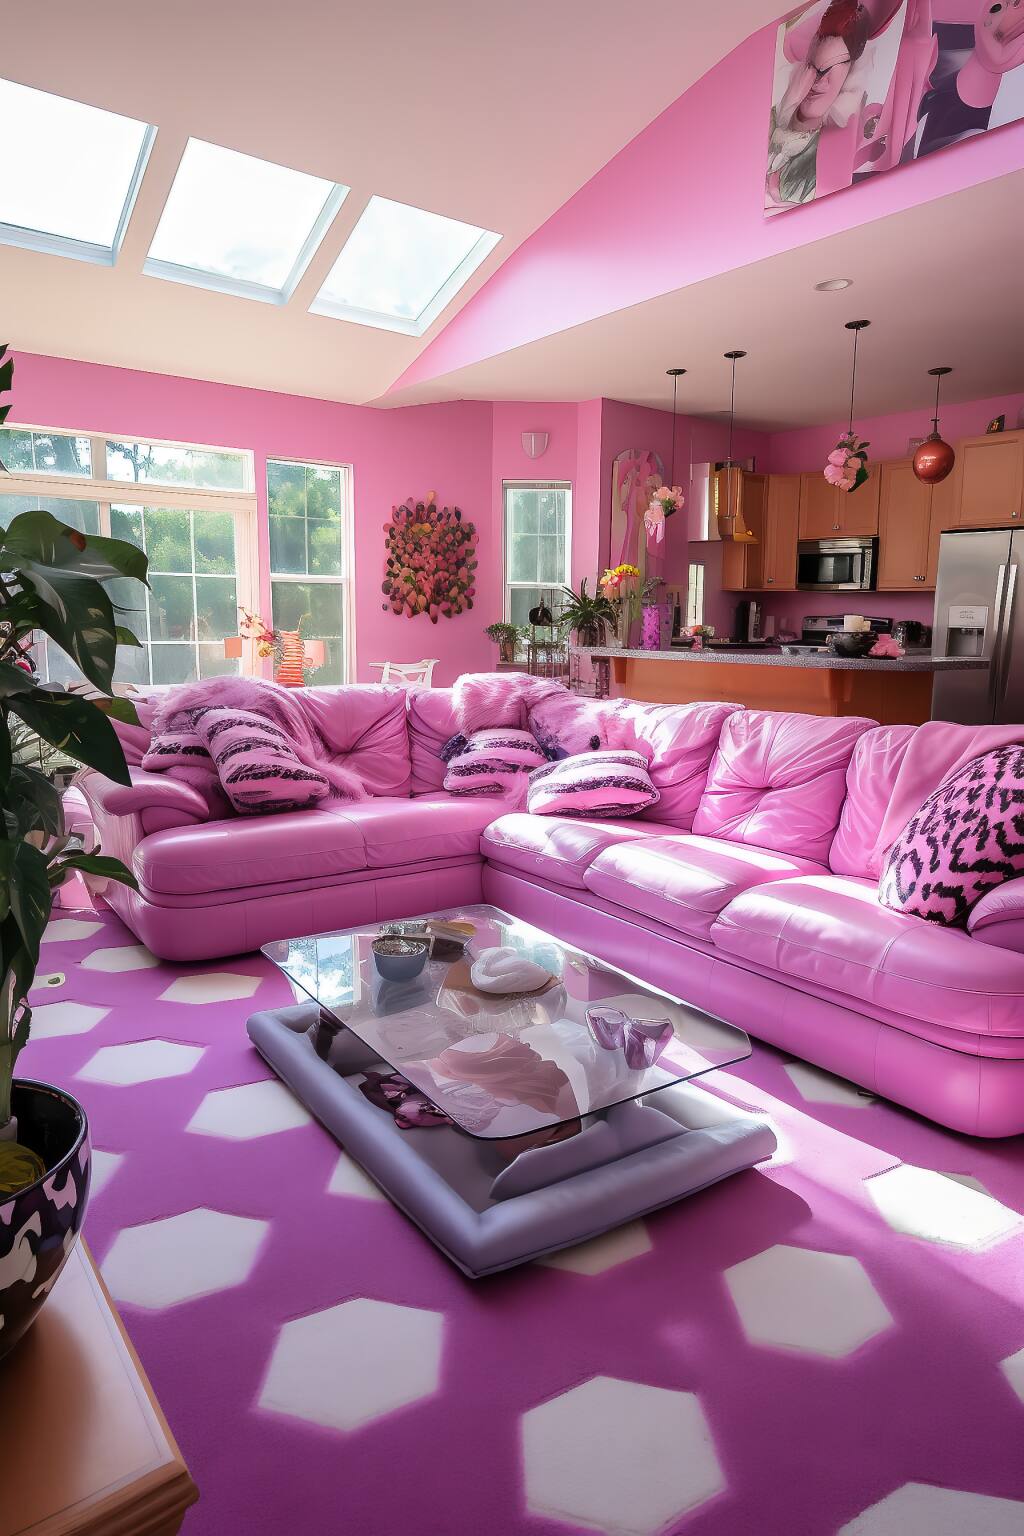 Ein Eklektisches, Romantisches Wohnzimmer Mit Einem Rosafarbenen Ledersofa, Einem Geometrischen Rosa-Weißen Teppich Und Lebhaften Dekorationselementen Unter Natürlichem Oberlicht.